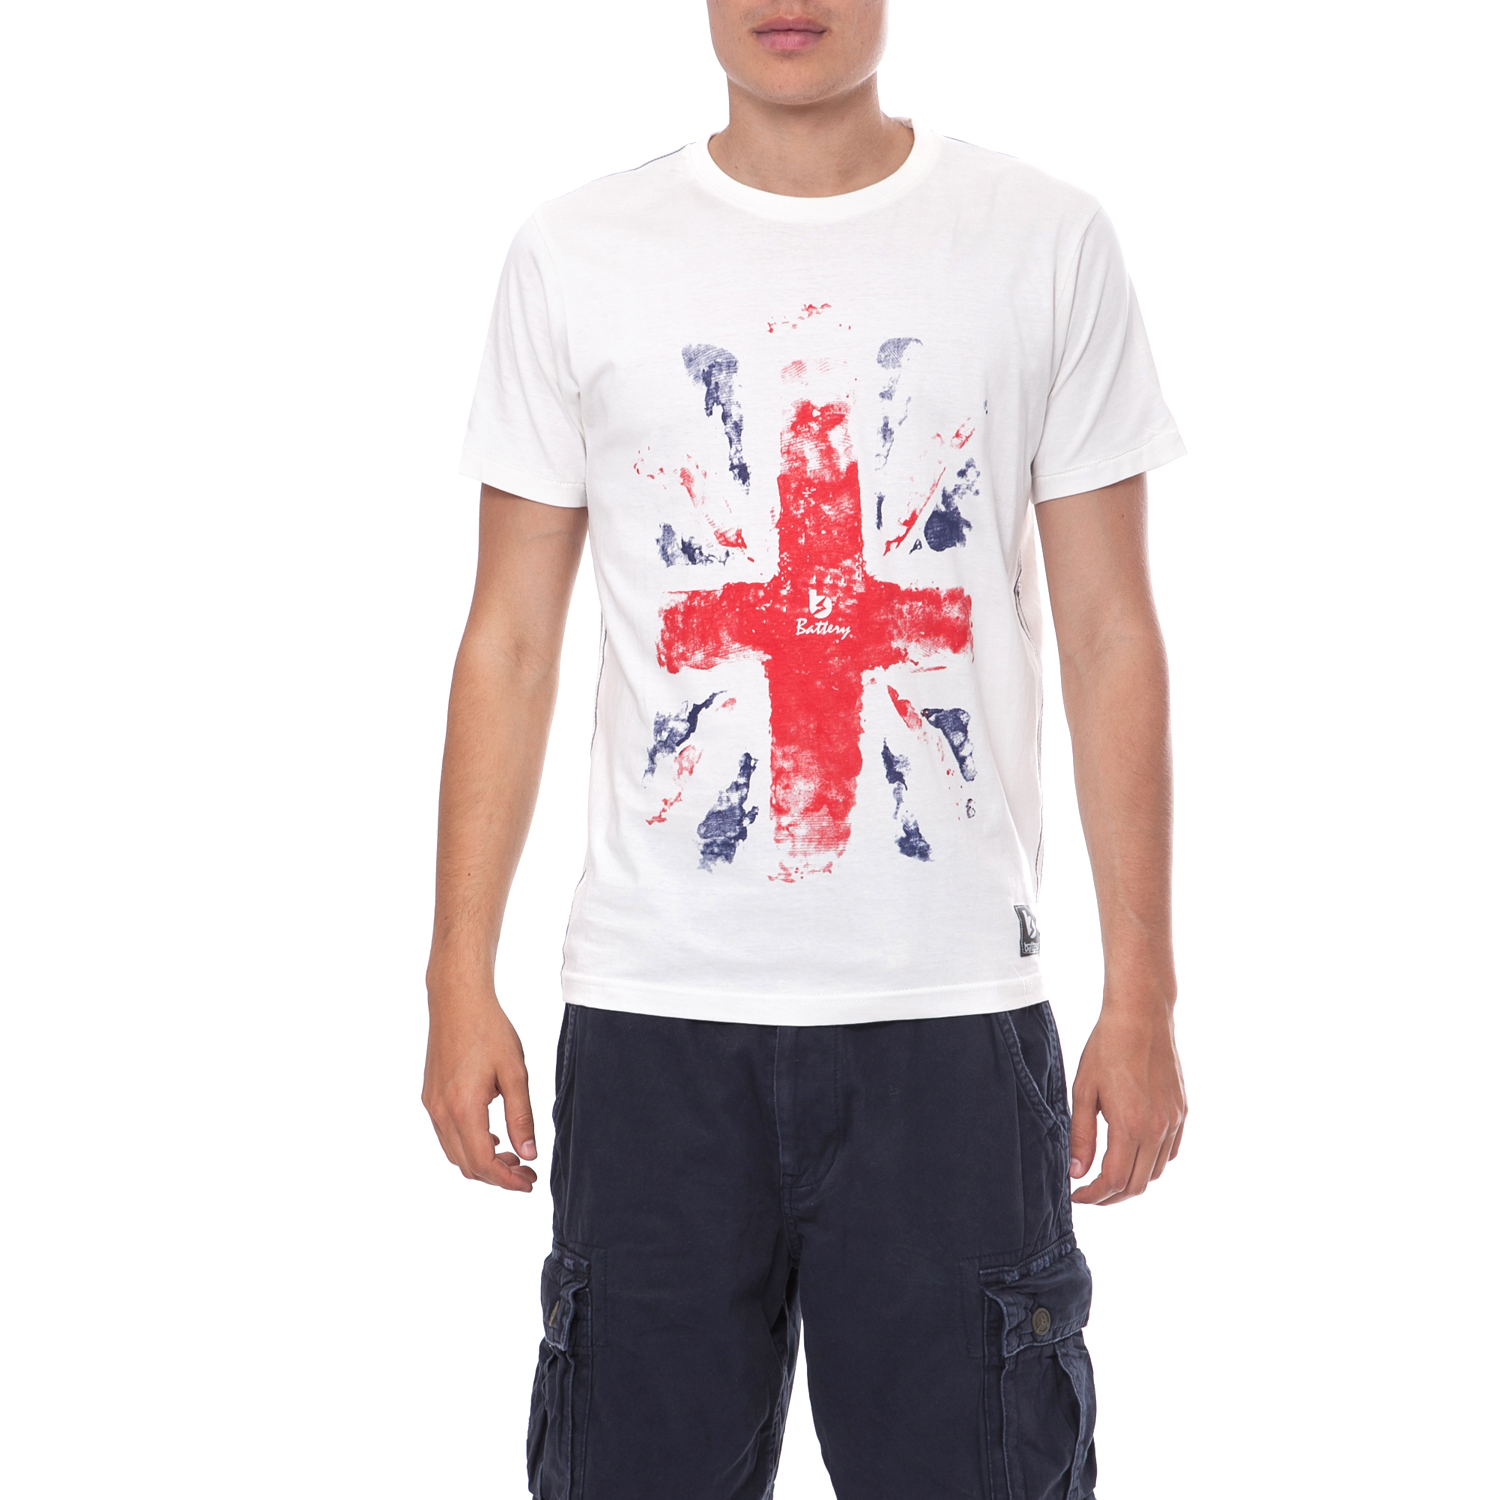 Ανδρικά/Ρούχα/Μπλούζες/Κοντομάνικες BATTERY - Ανδρική μπλούζα Battery λευκή